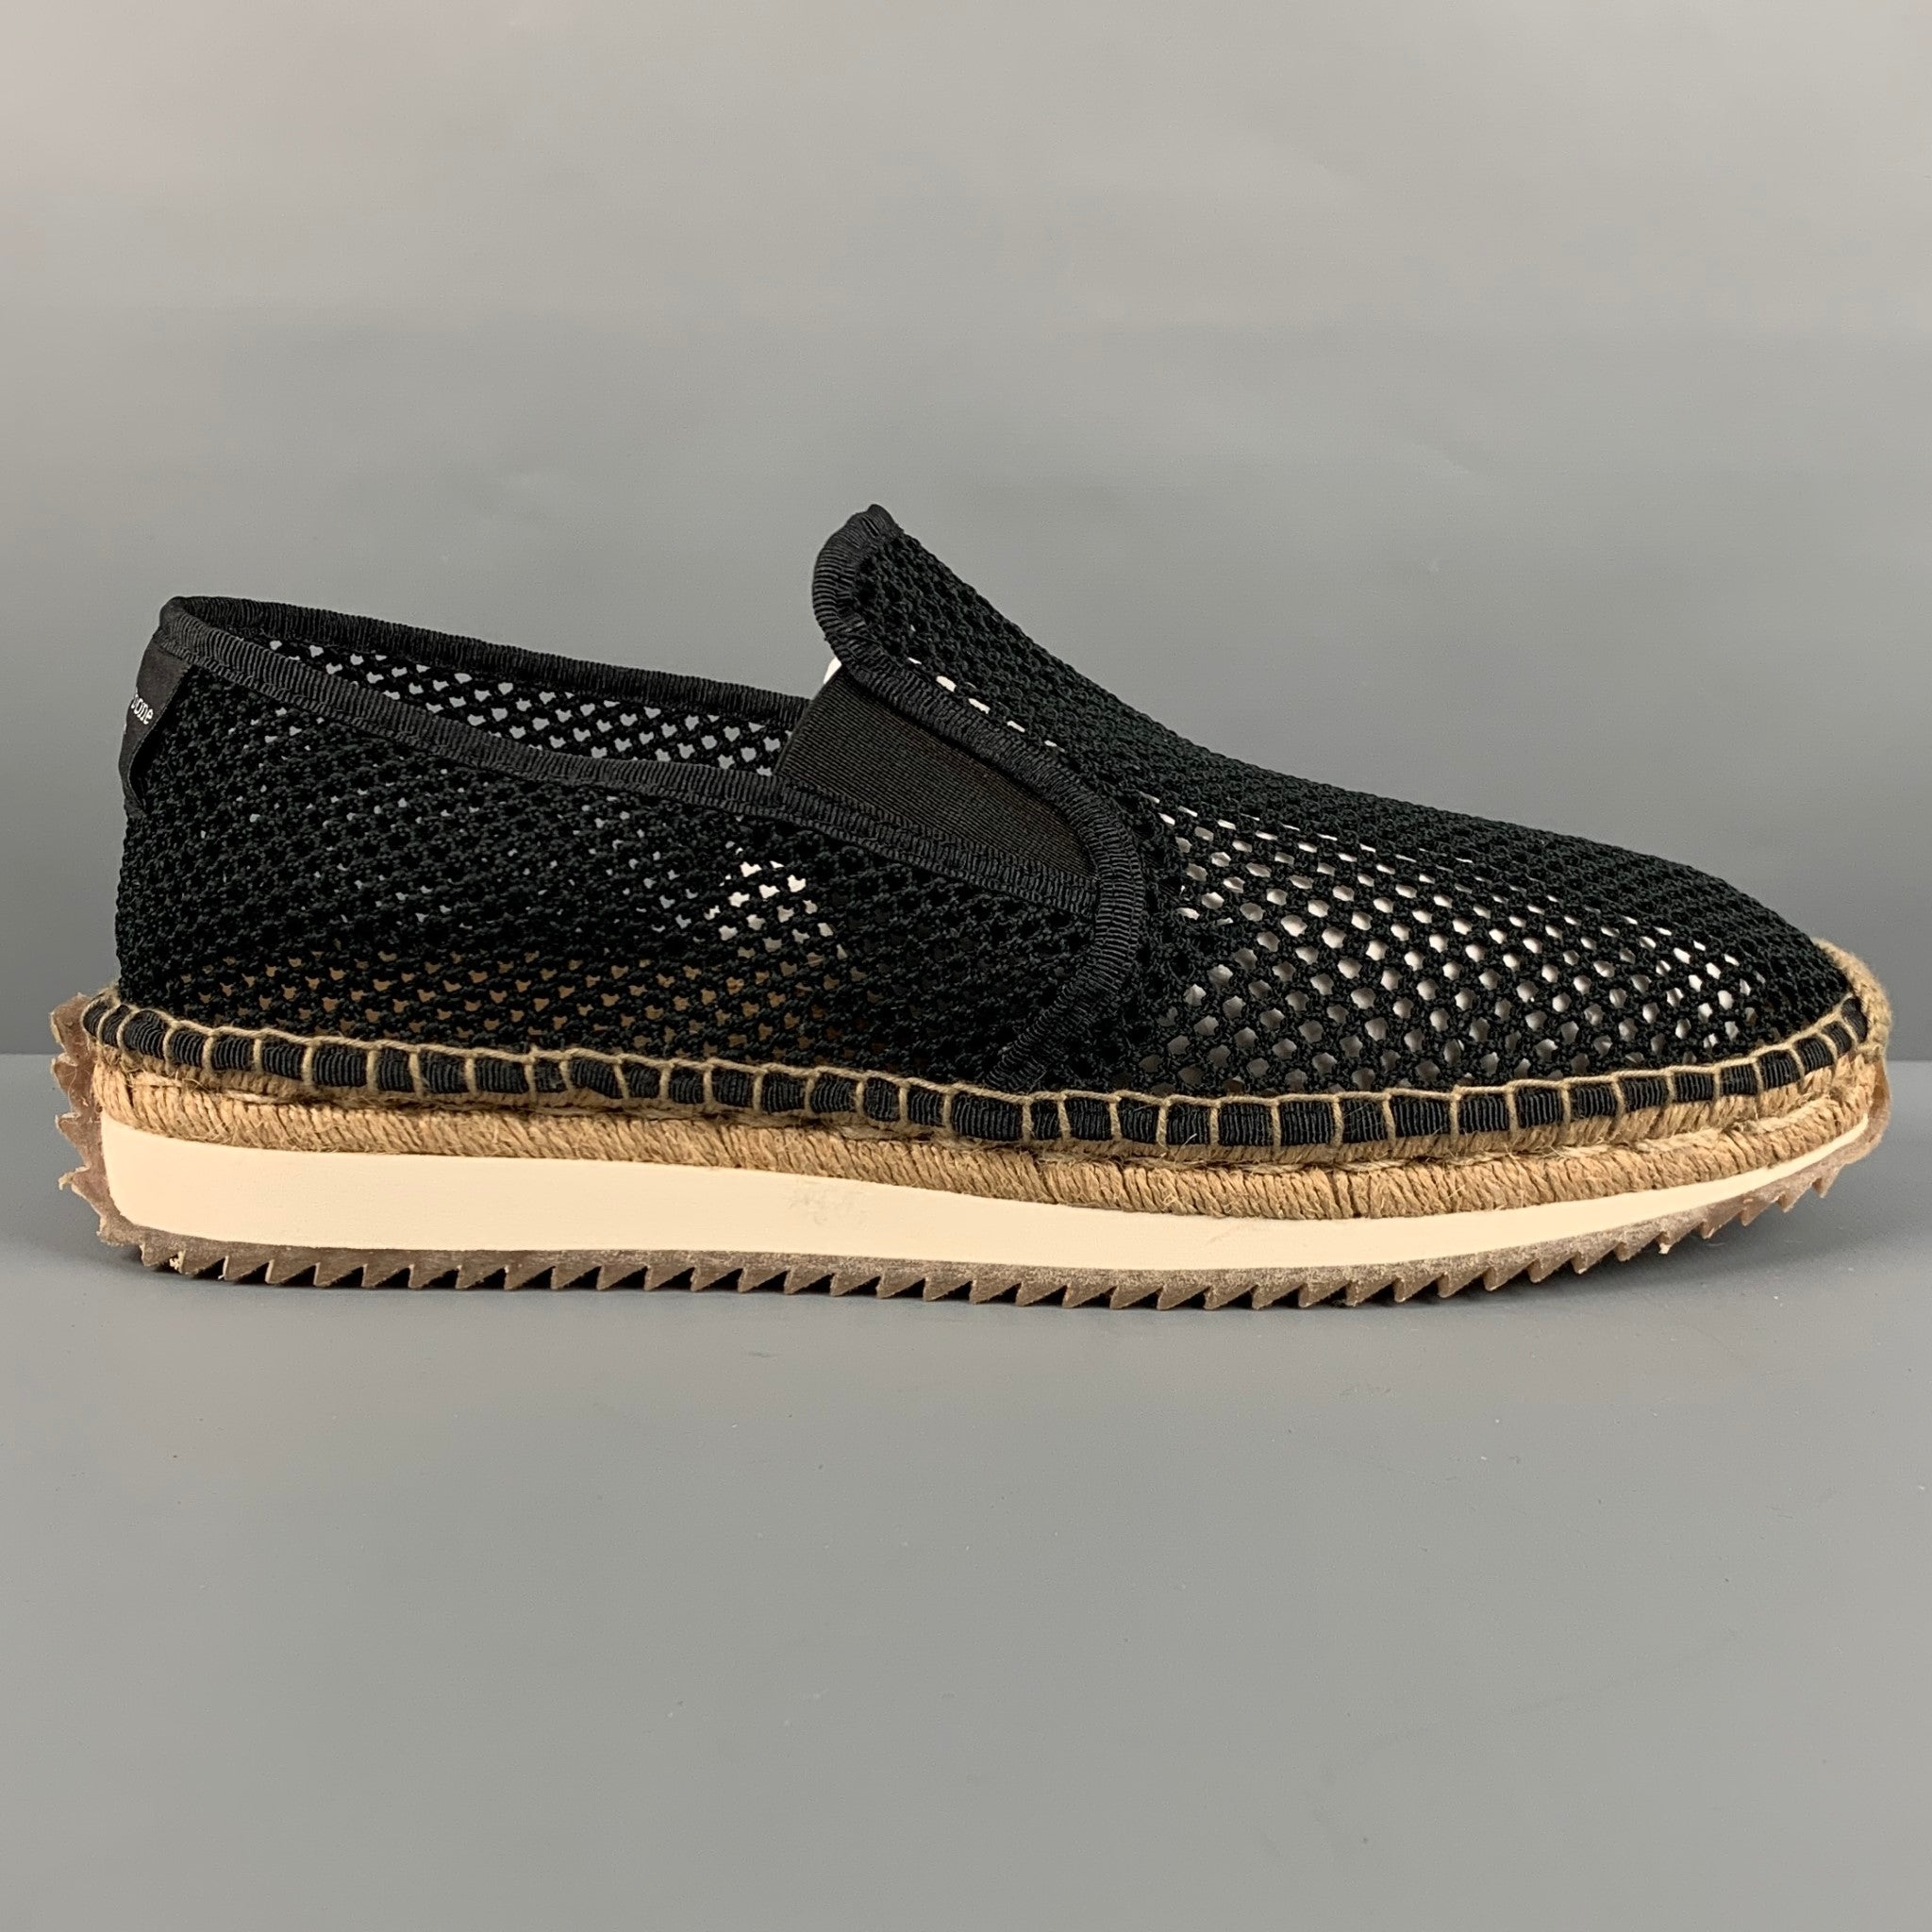 LOUIS VUITTON Size 12 Black Damier Leather Lace Up Dress Shoes – Sui  Generis Designer Consignment